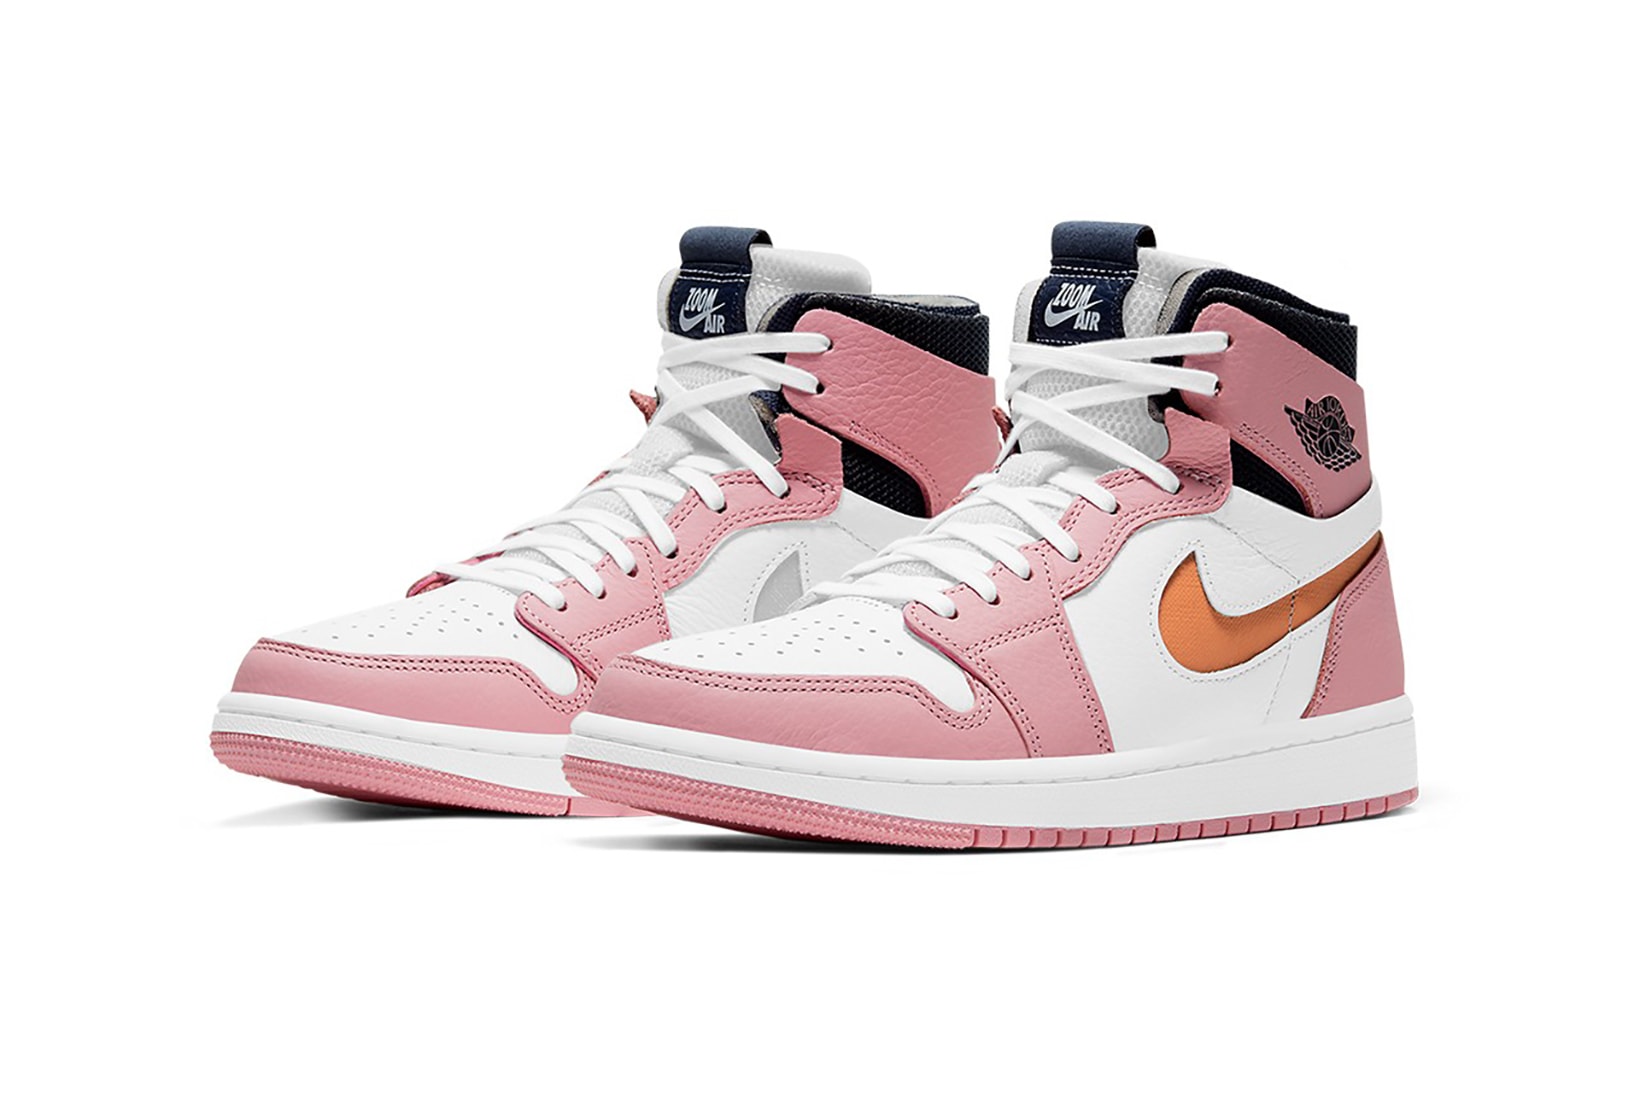 nike air jordan 1 high zoom cmft sneakers pink glaze black orange white colorway shoes footwear sneakerhead laces